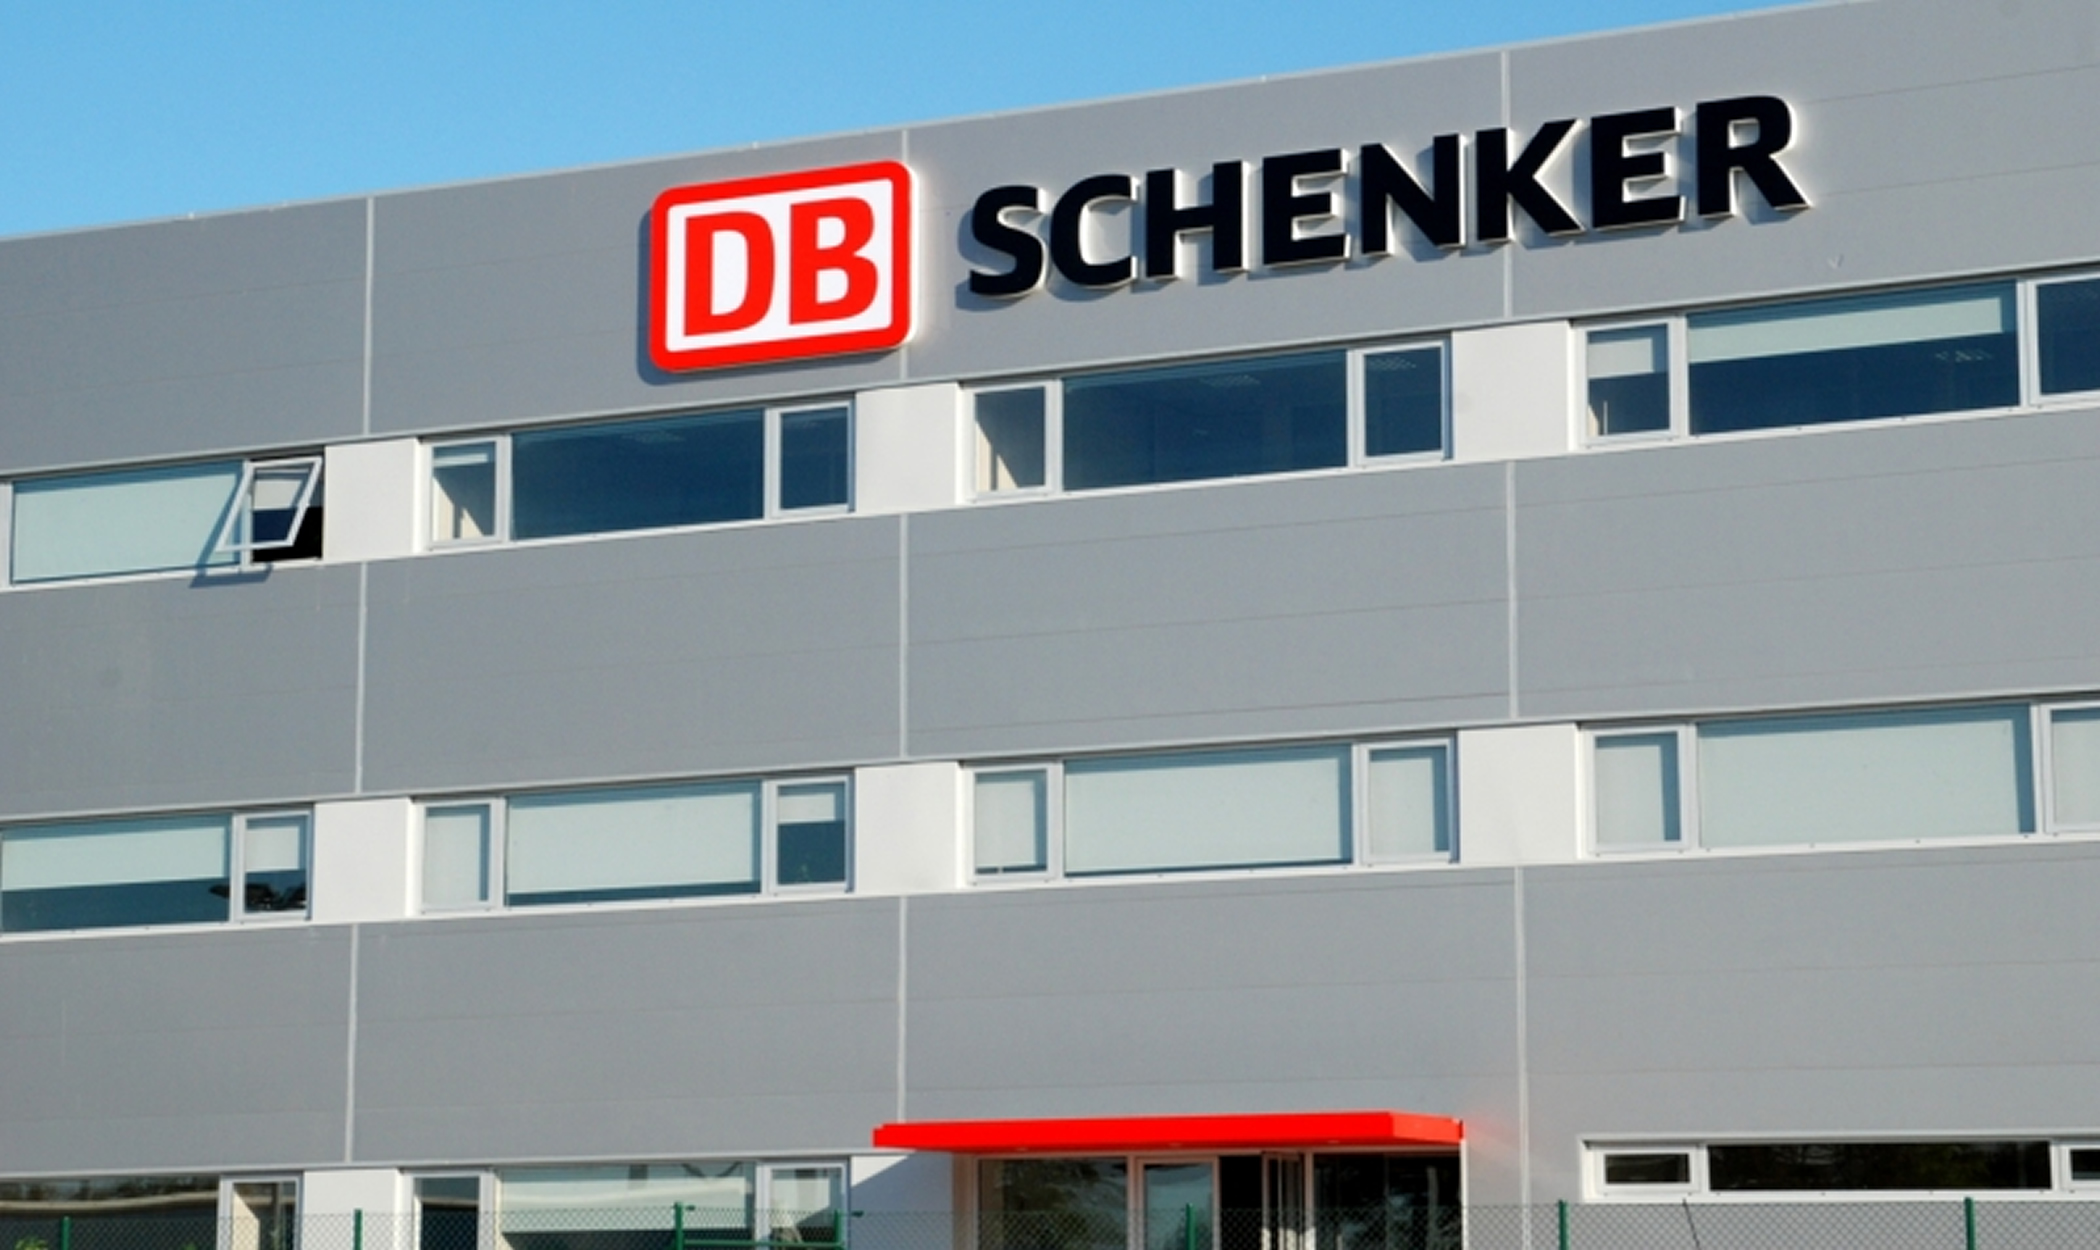 Unidade Industrial DB SCHENKER